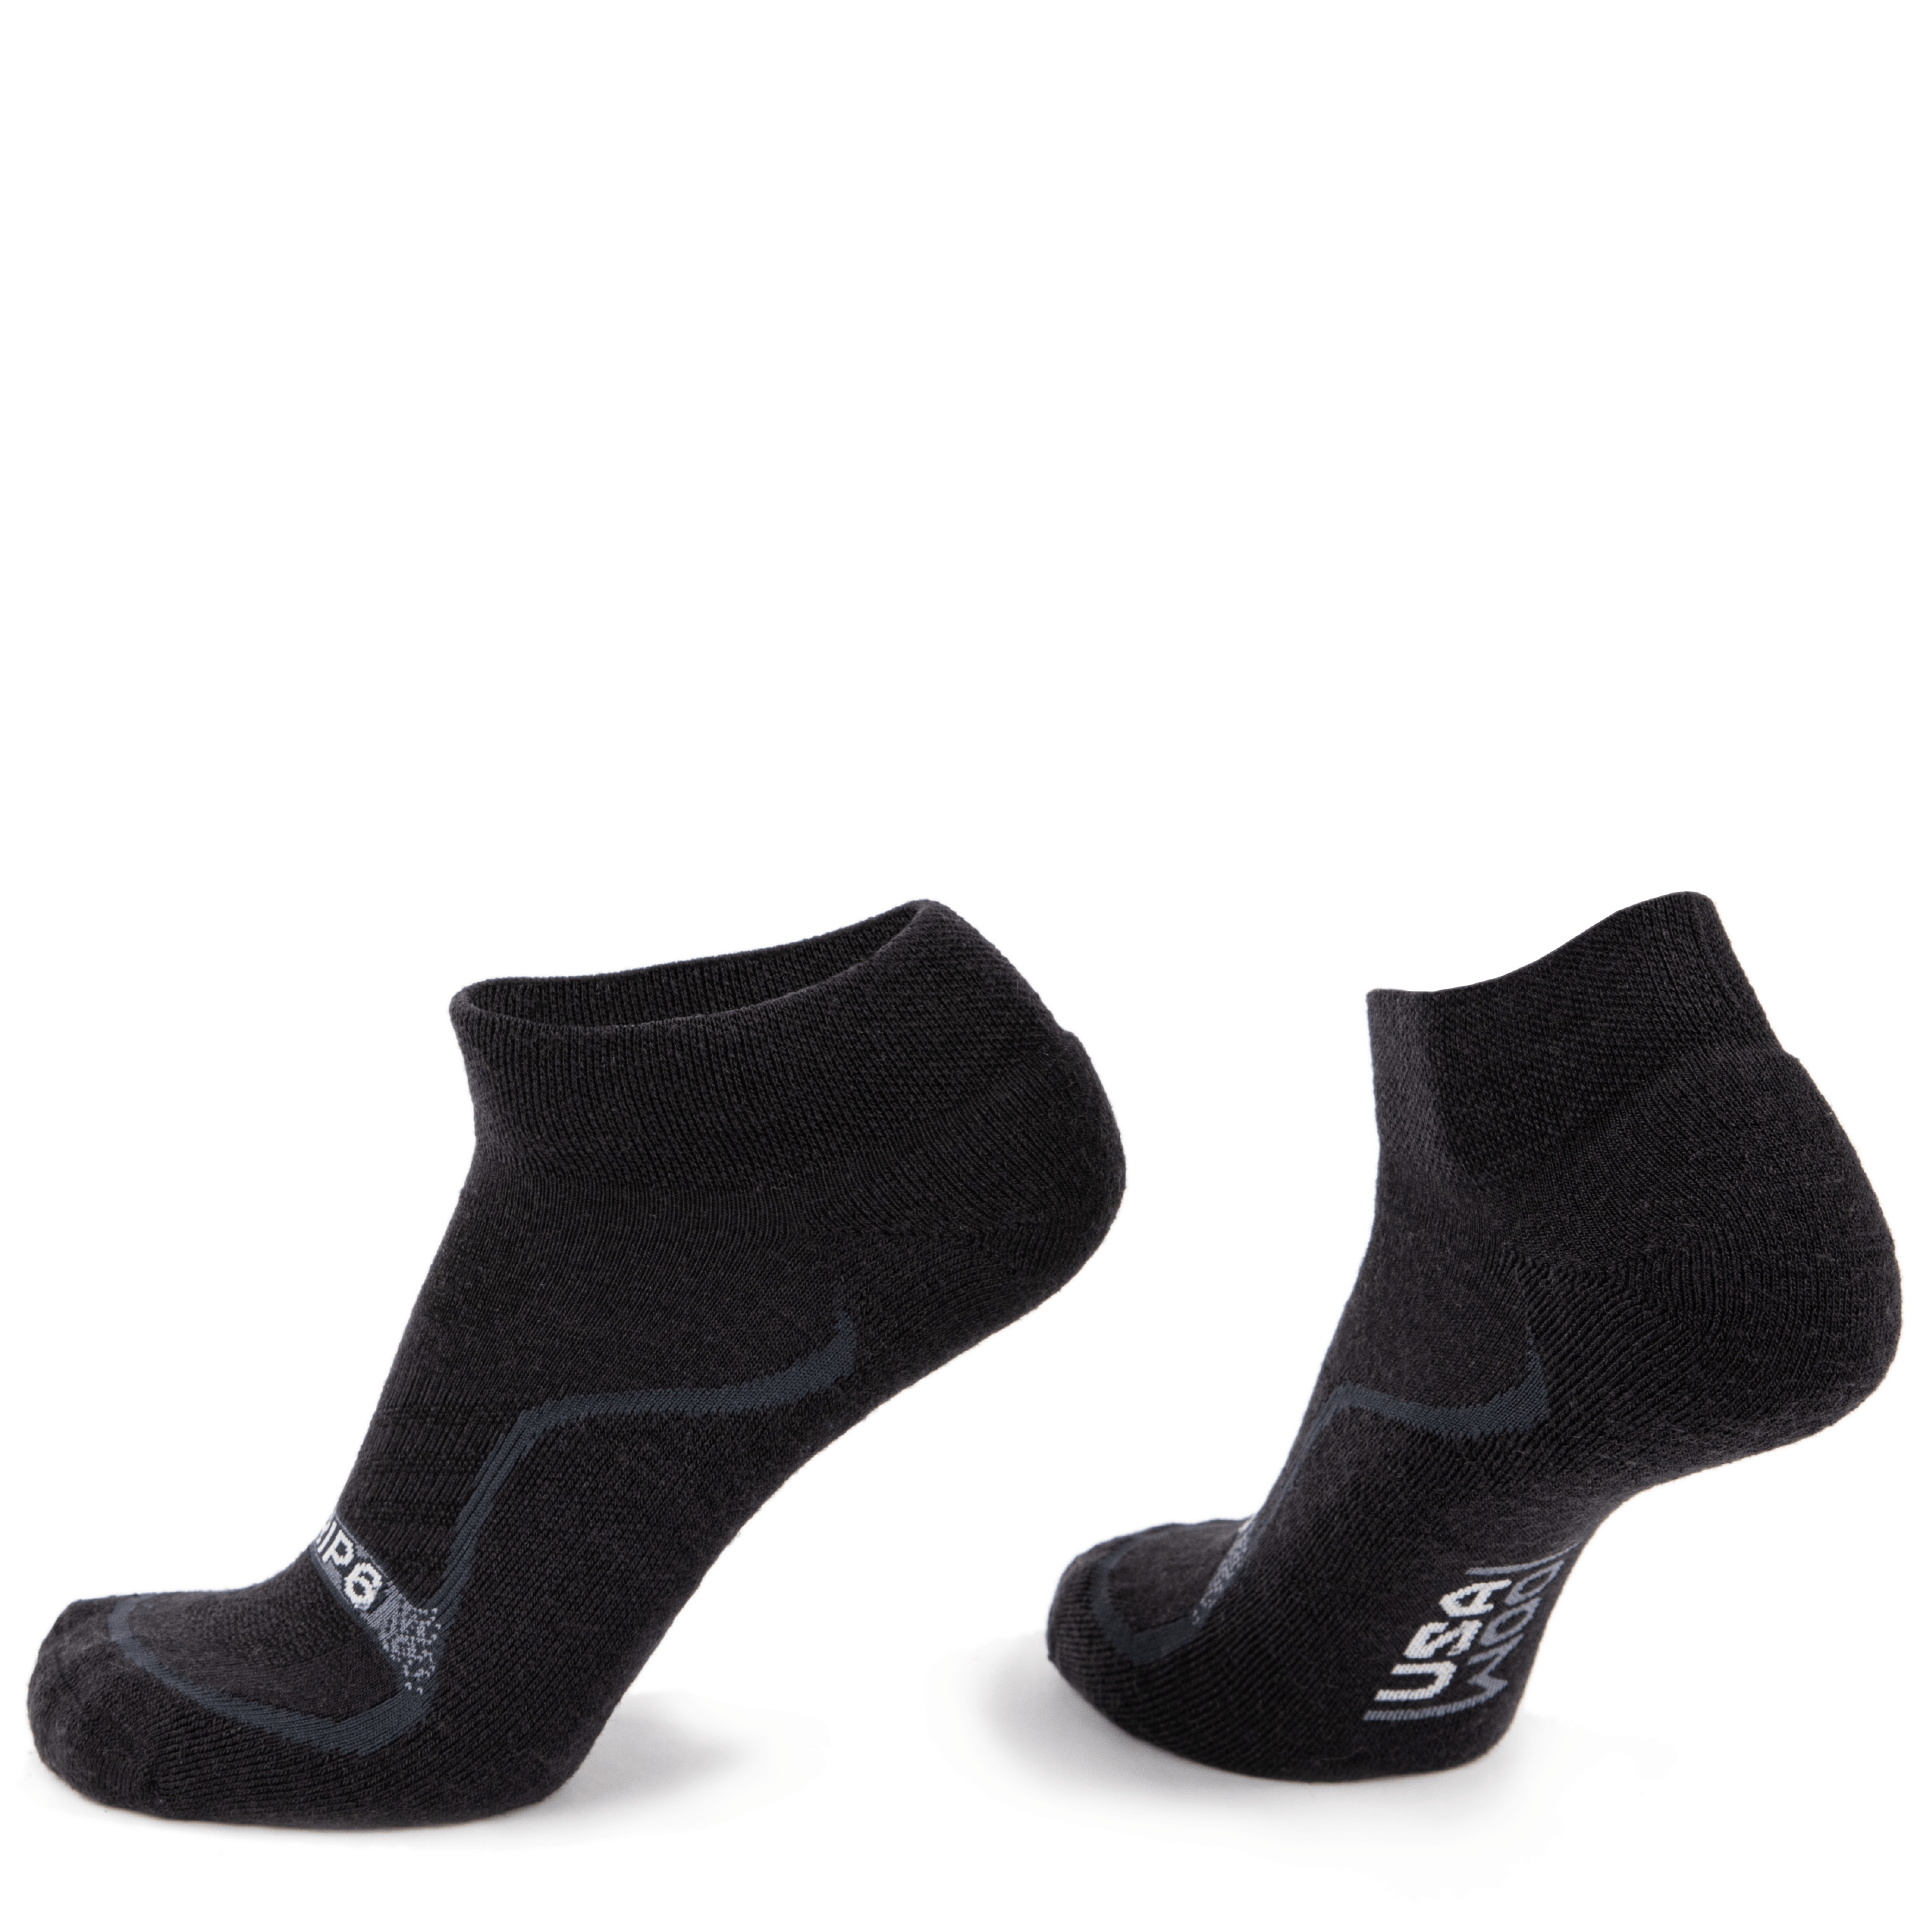 Wool Ankle Socks - Everyday Black